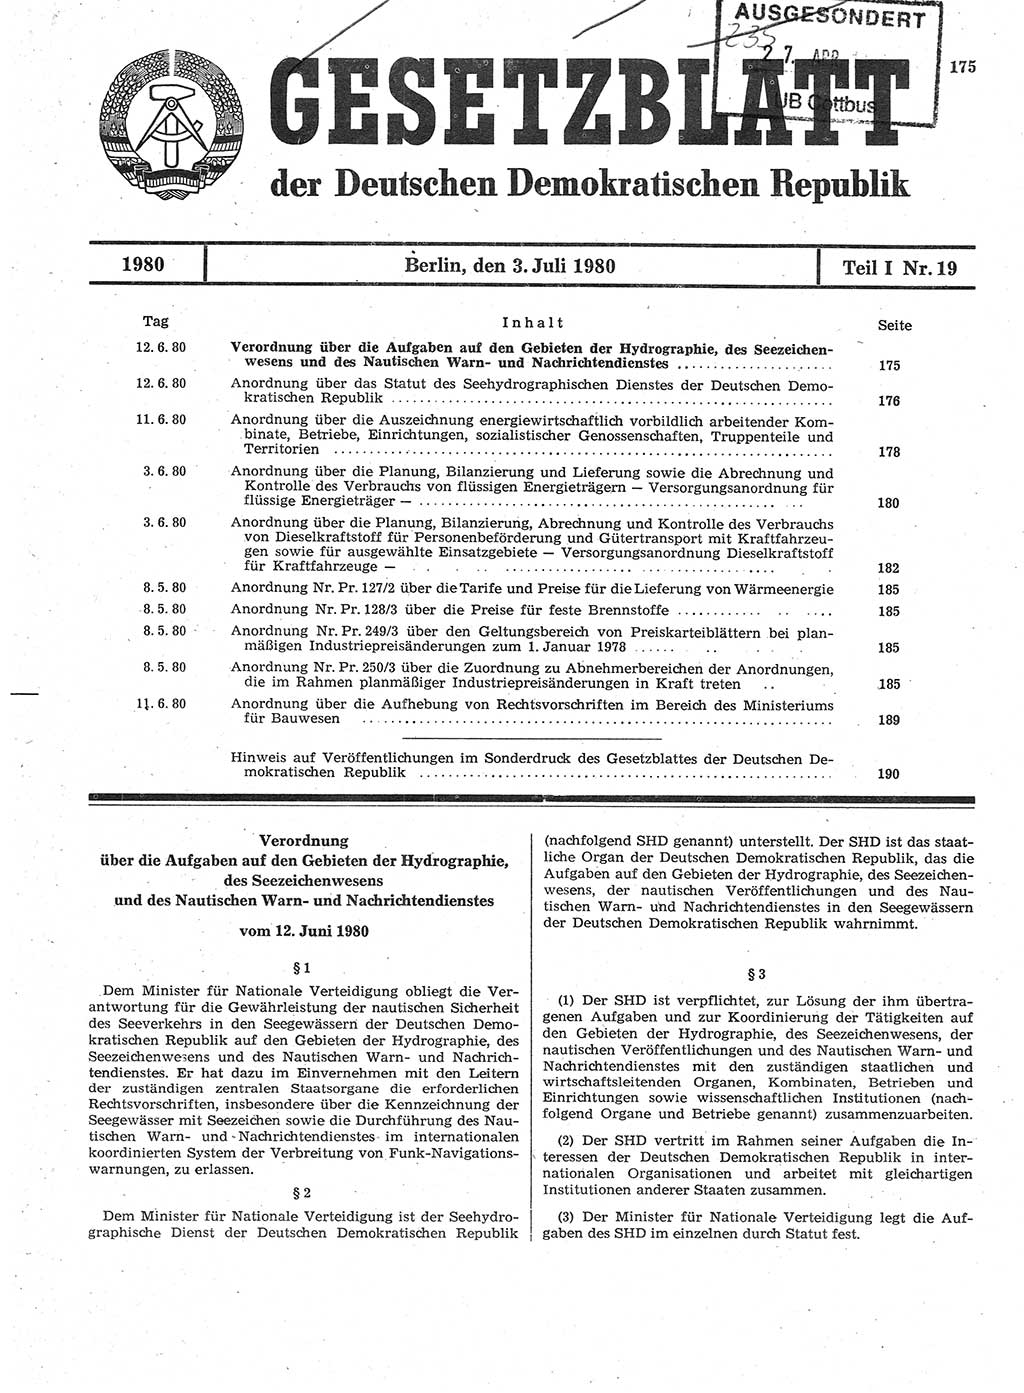 Gesetzblatt (GBl.) der Deutschen Demokratischen Republik (DDR) Teil Ⅰ 1980, Seite 175 (GBl. DDR Ⅰ 1980, S. 175)